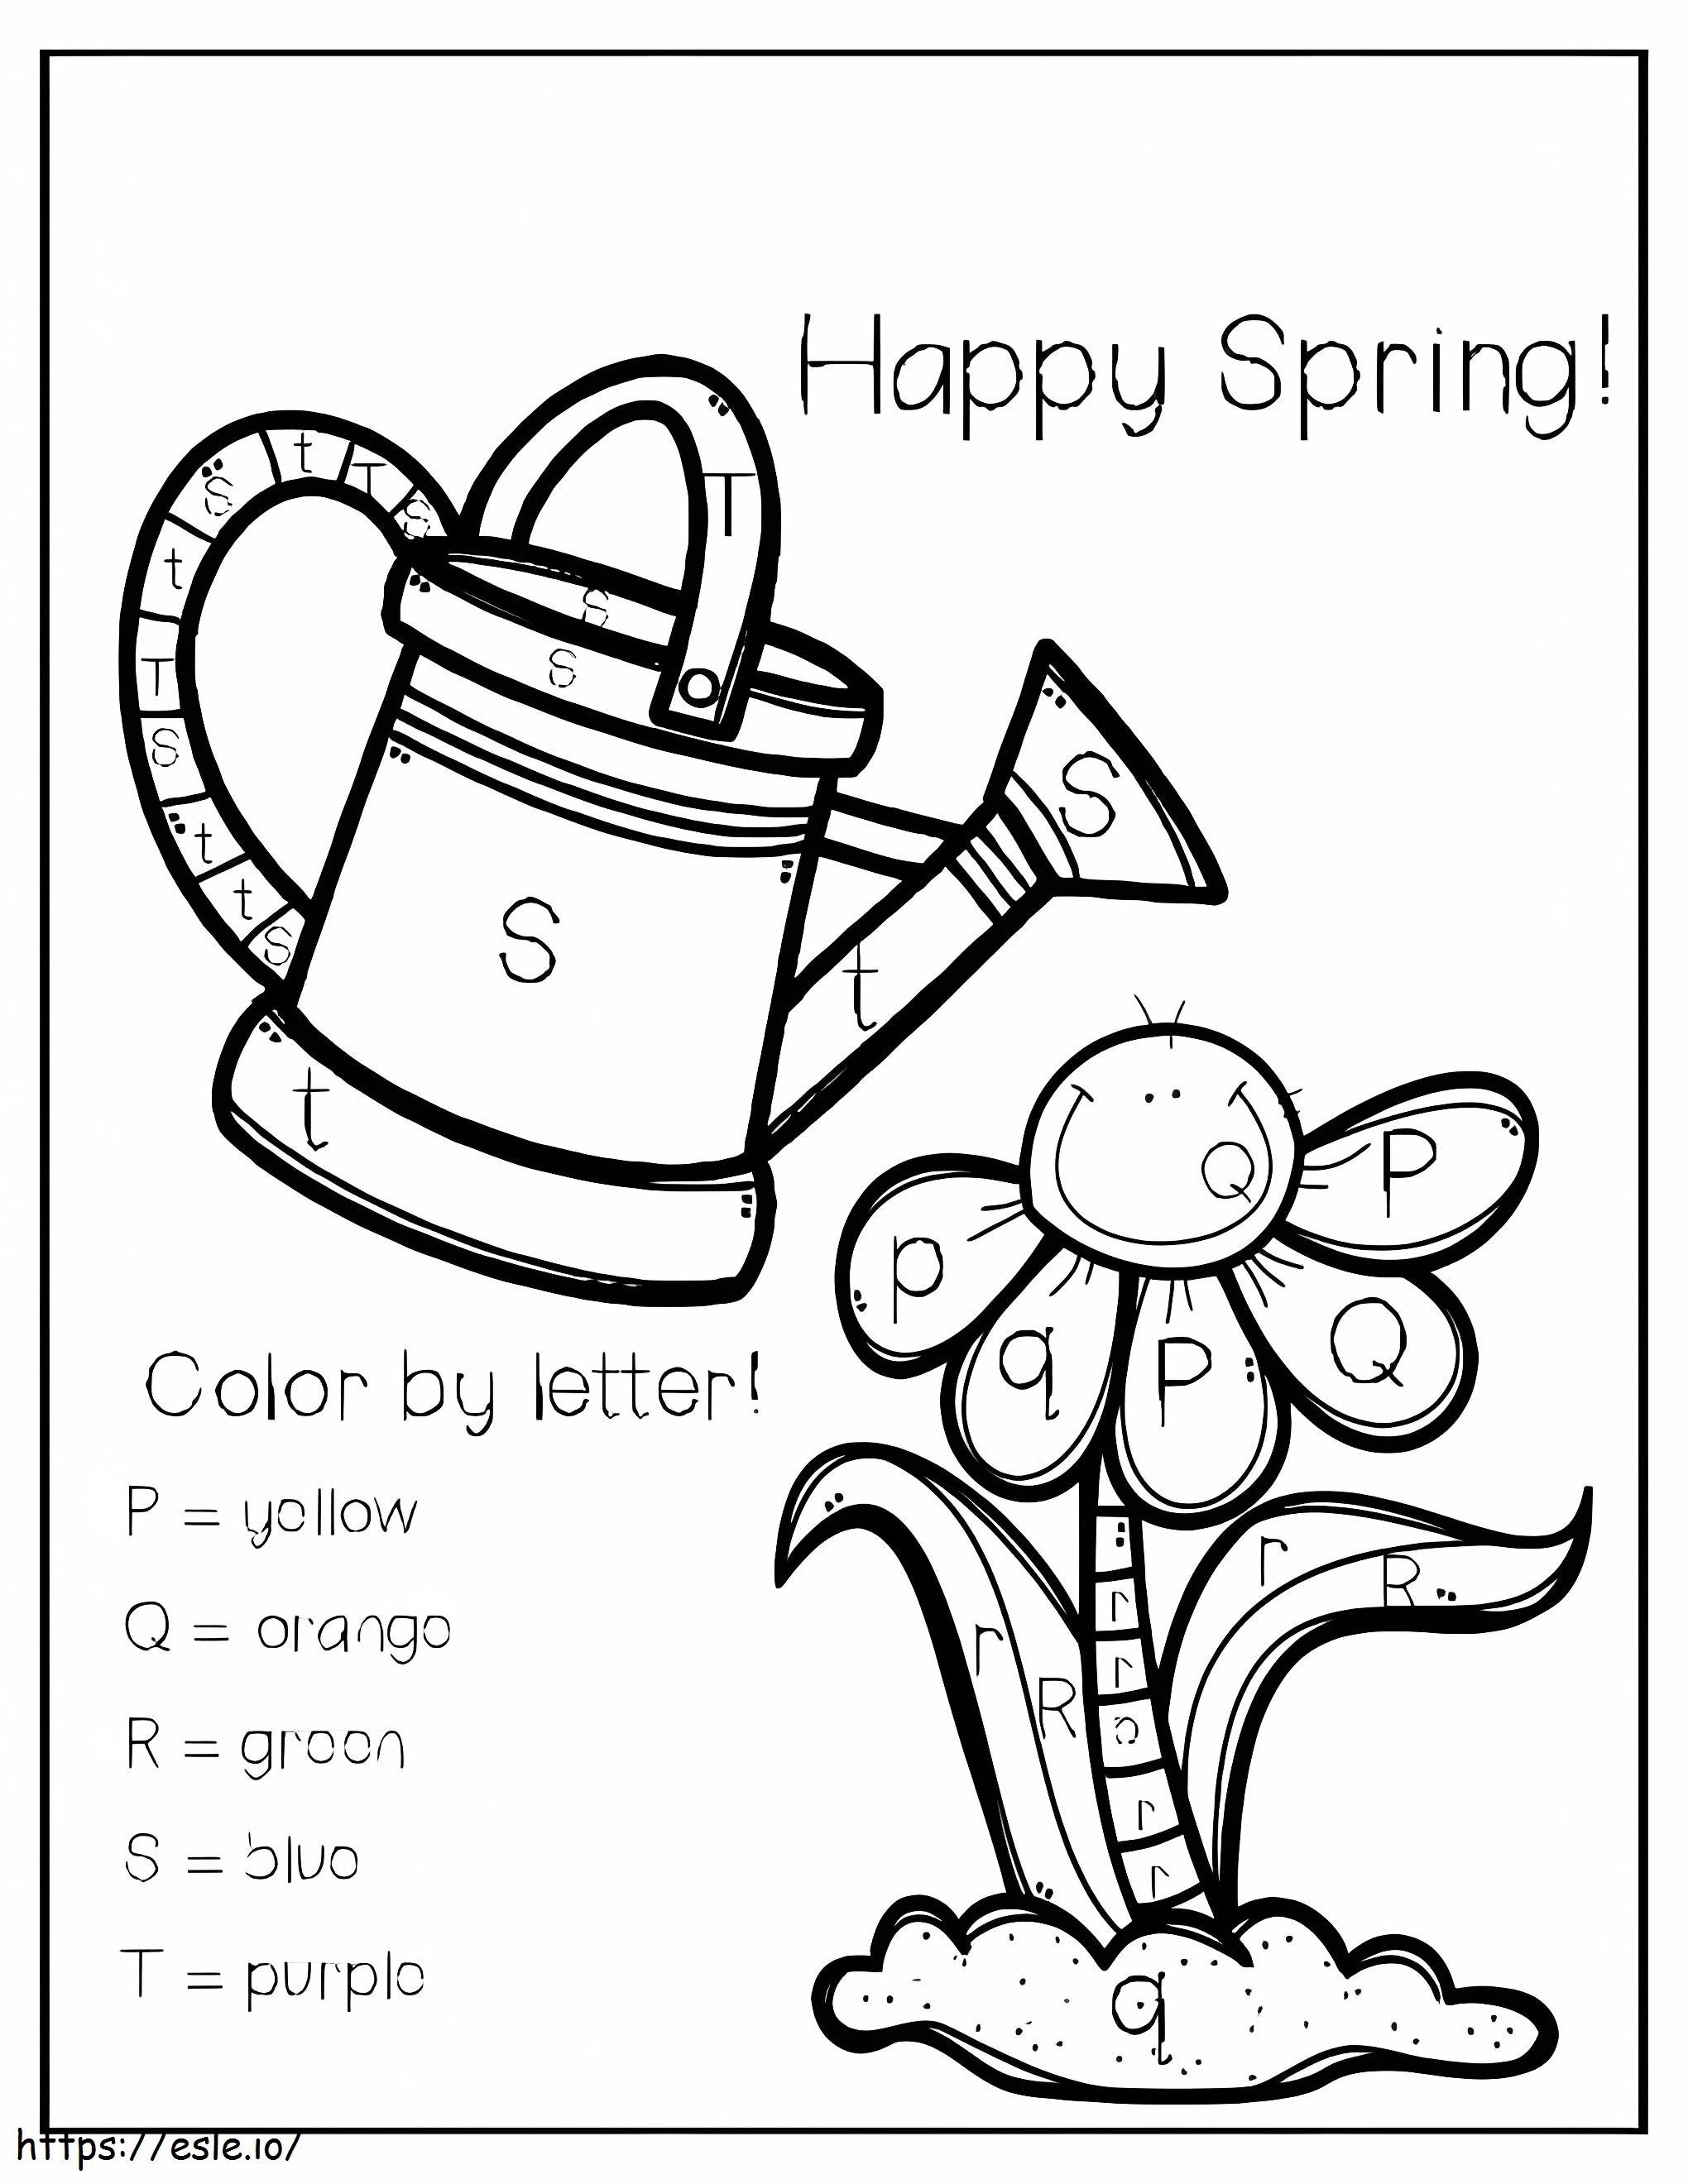 Colore felice della primavera dalle lettere da colorare